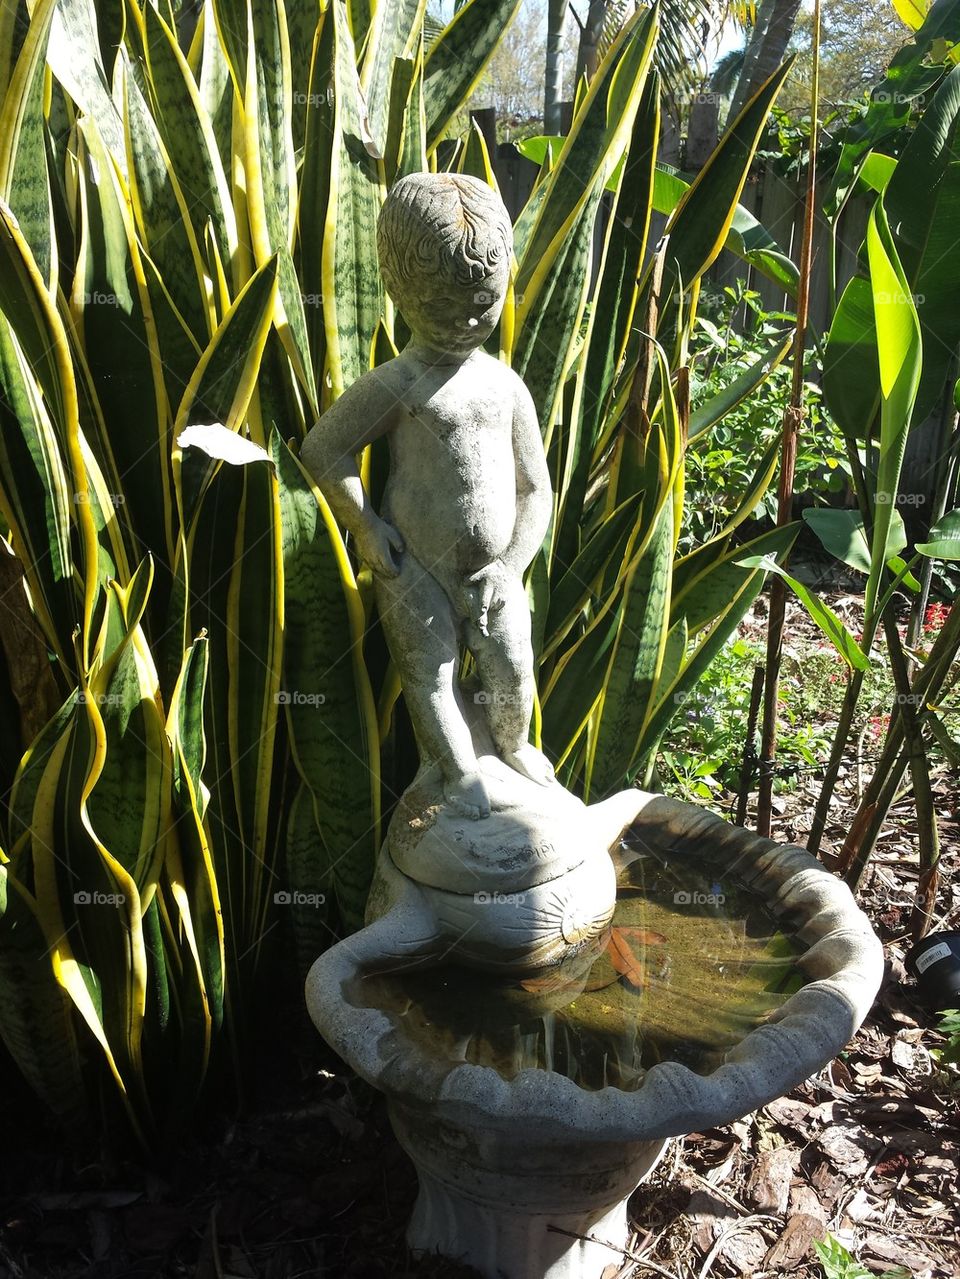 peeing boy fountain birdbath 